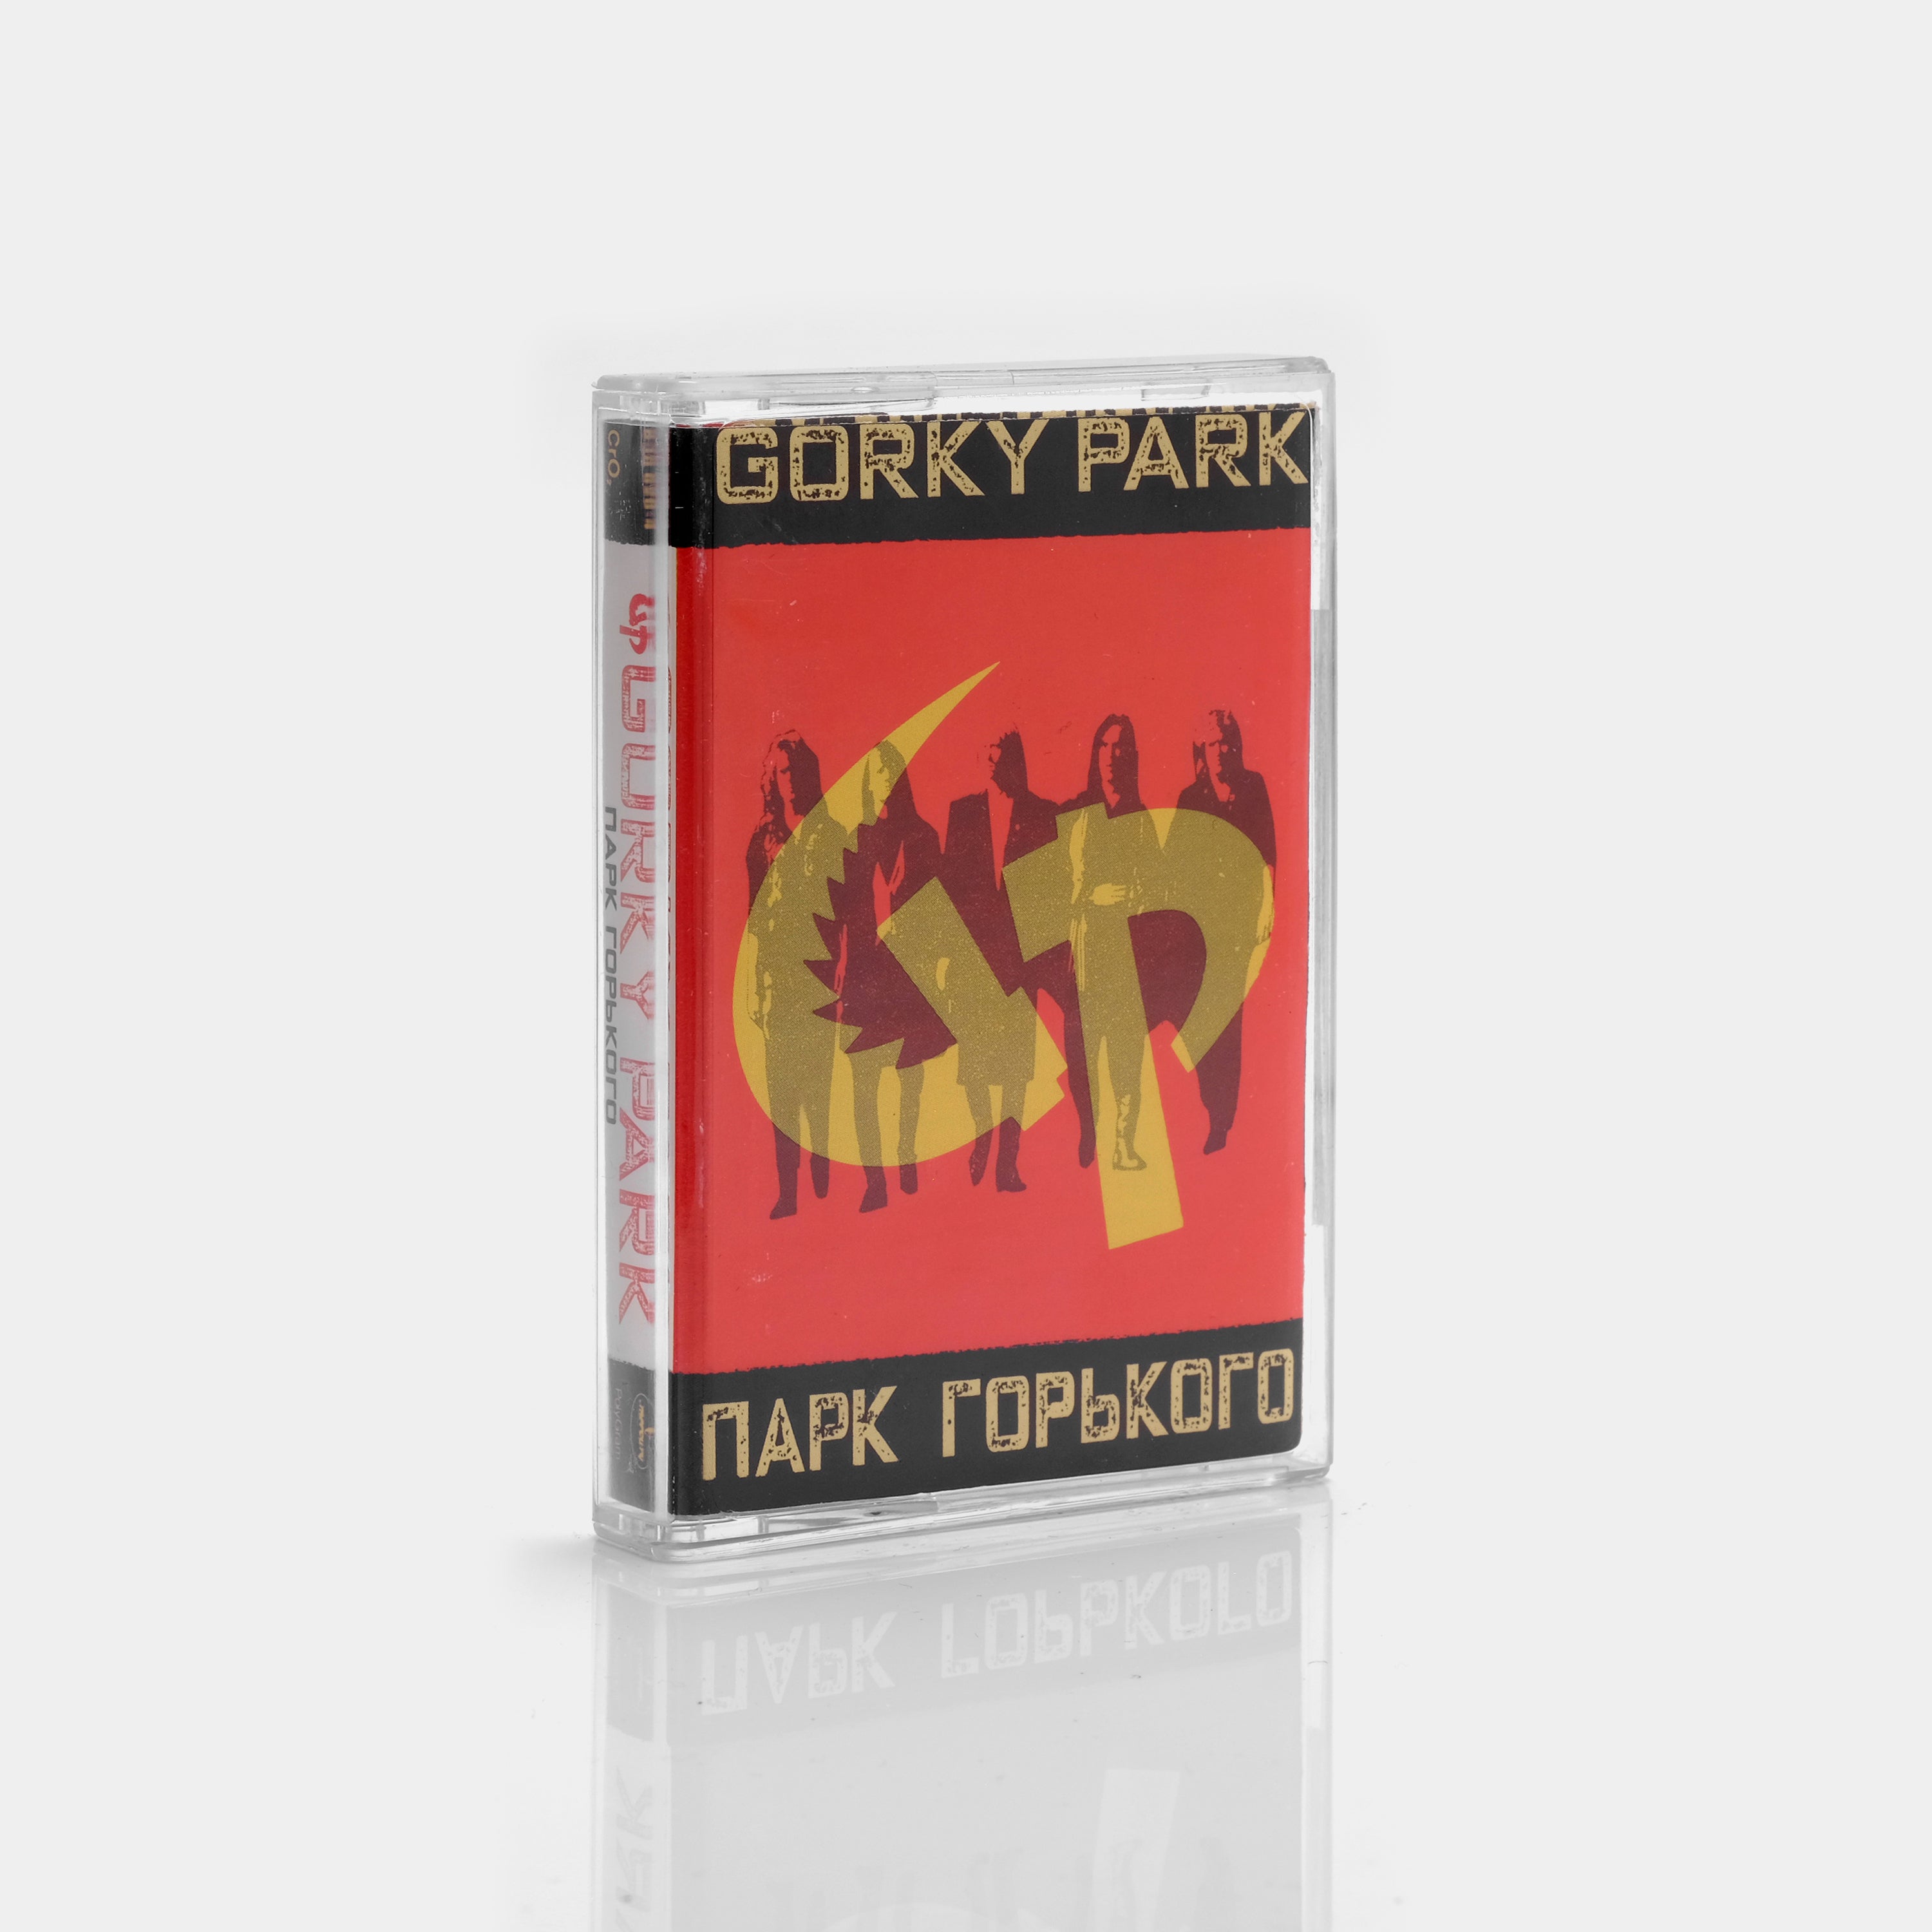 Gorky Park - Gorky Park (Парк Горького) Cassette Tape